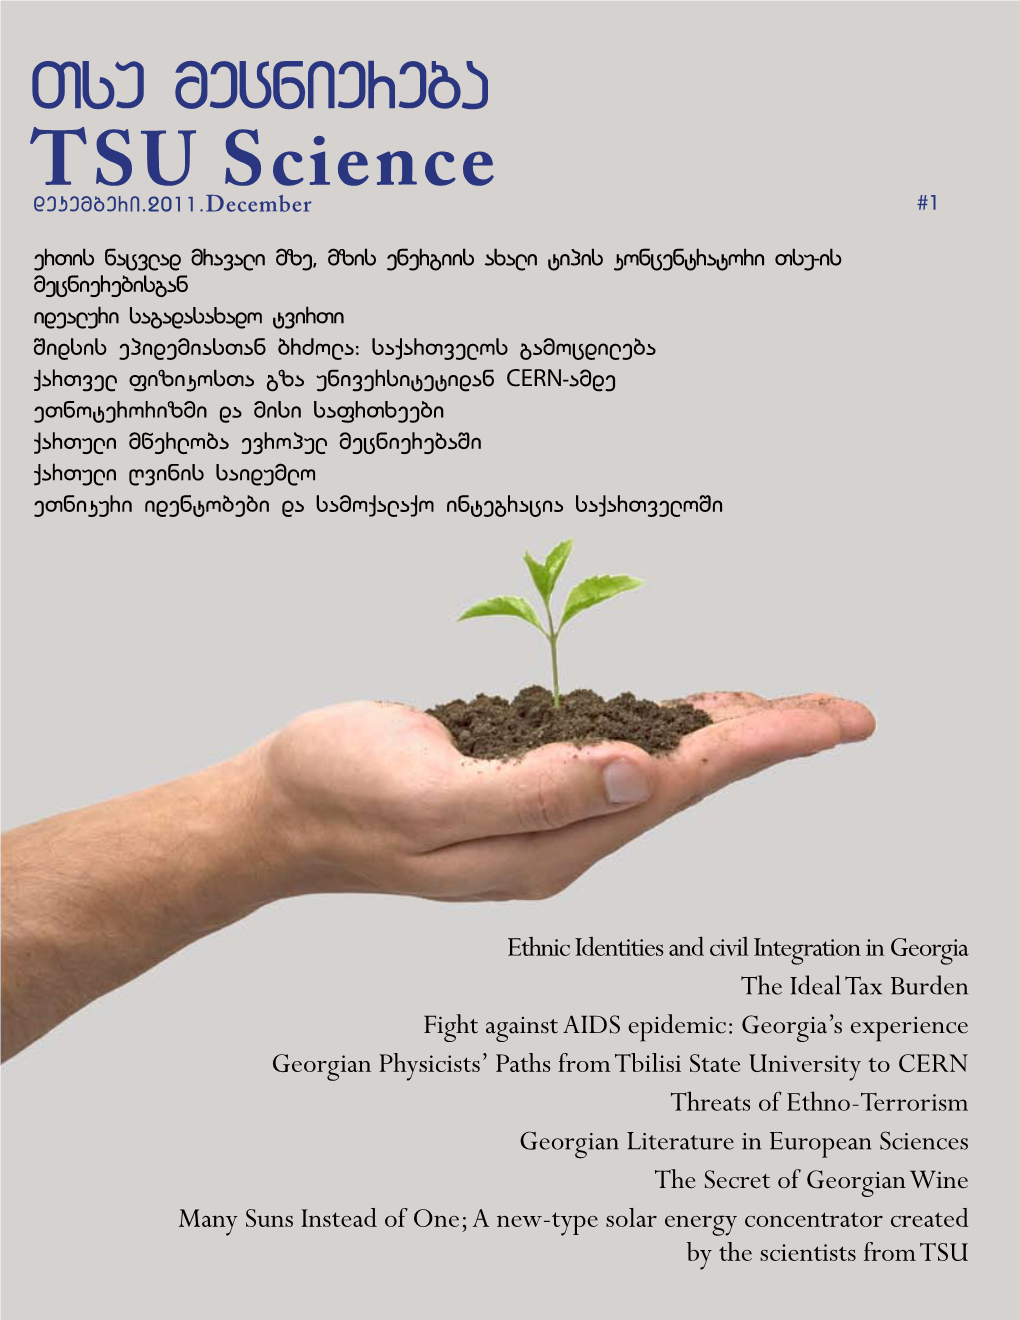 TSU Science - Serves